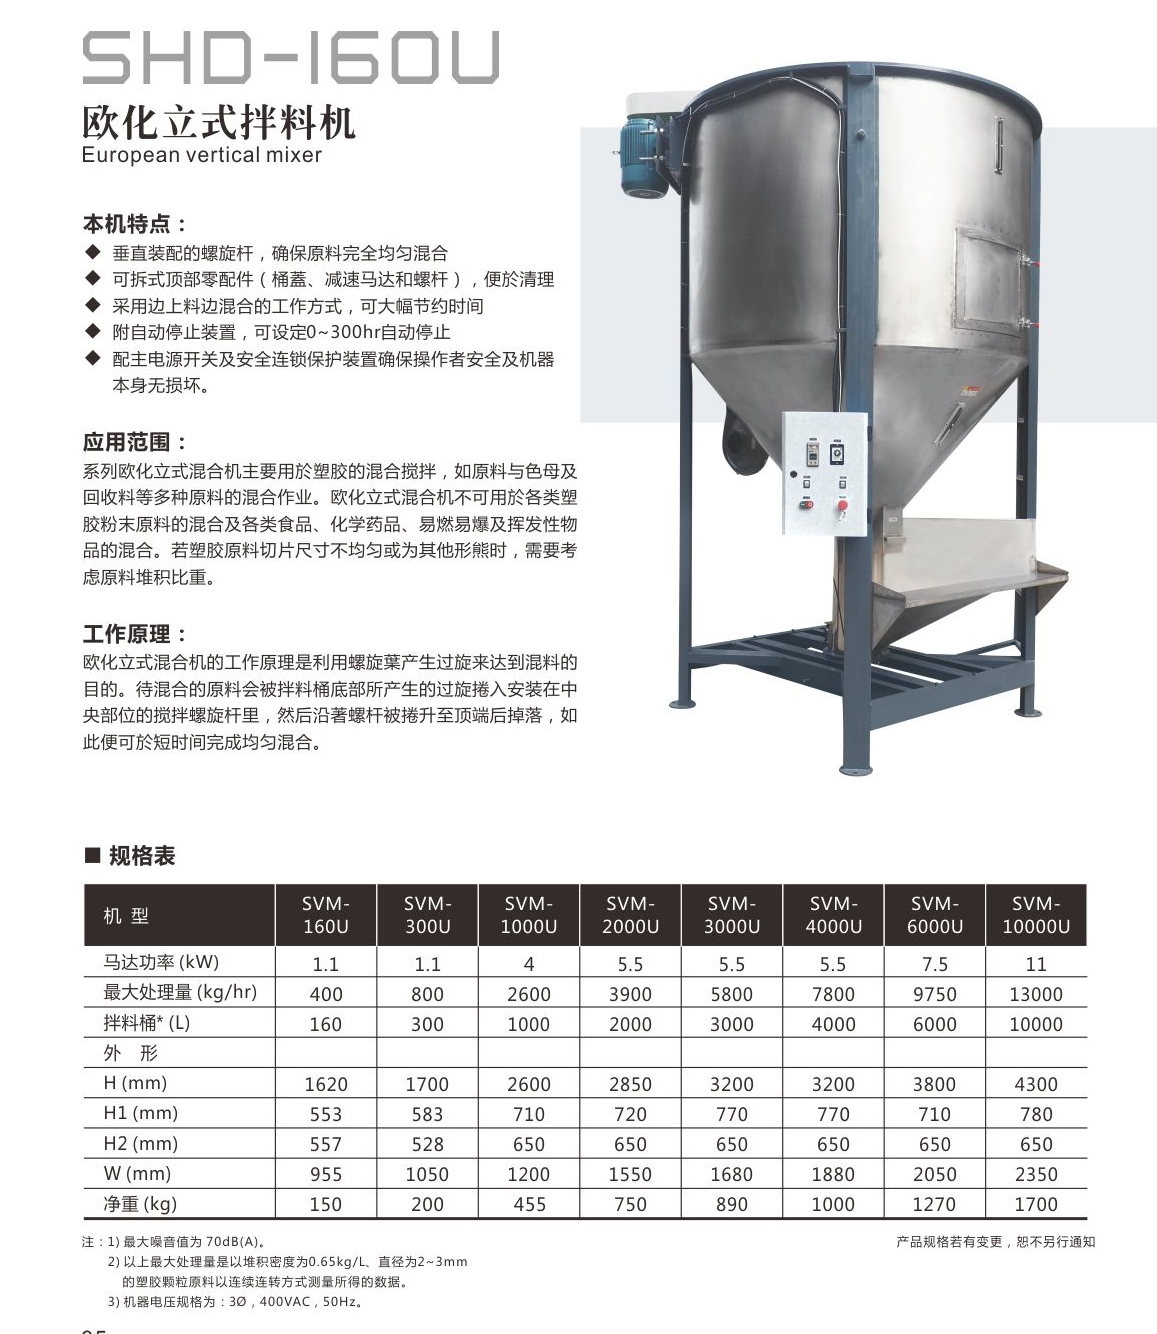 信泰-欧化立式拌料机-SHD-160U   厂家直销   批发